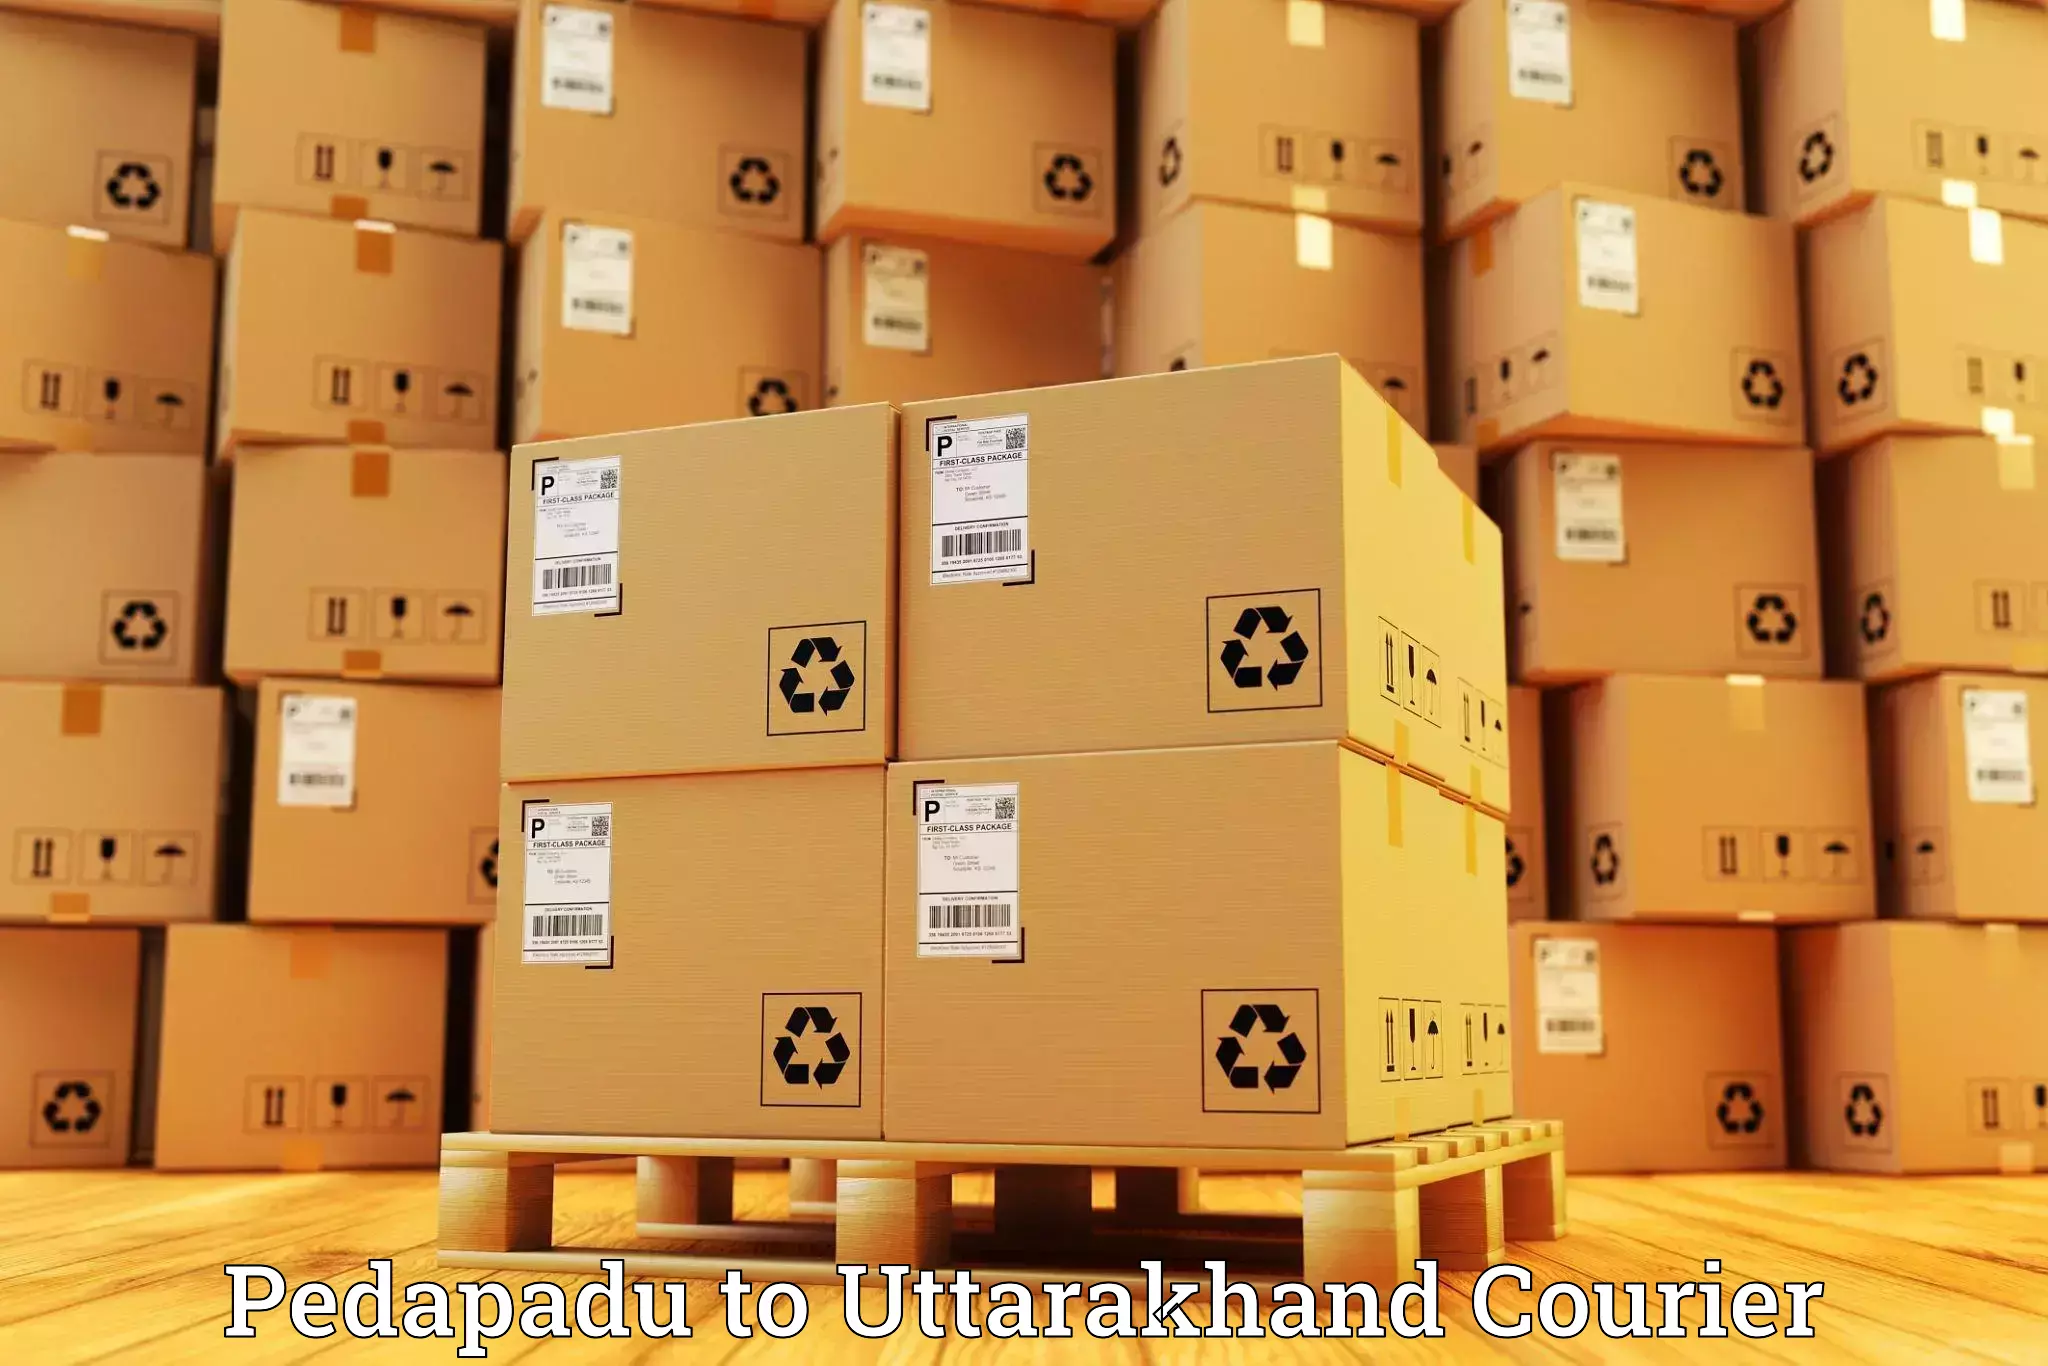 Express package services Pedapadu to Uttarakhand